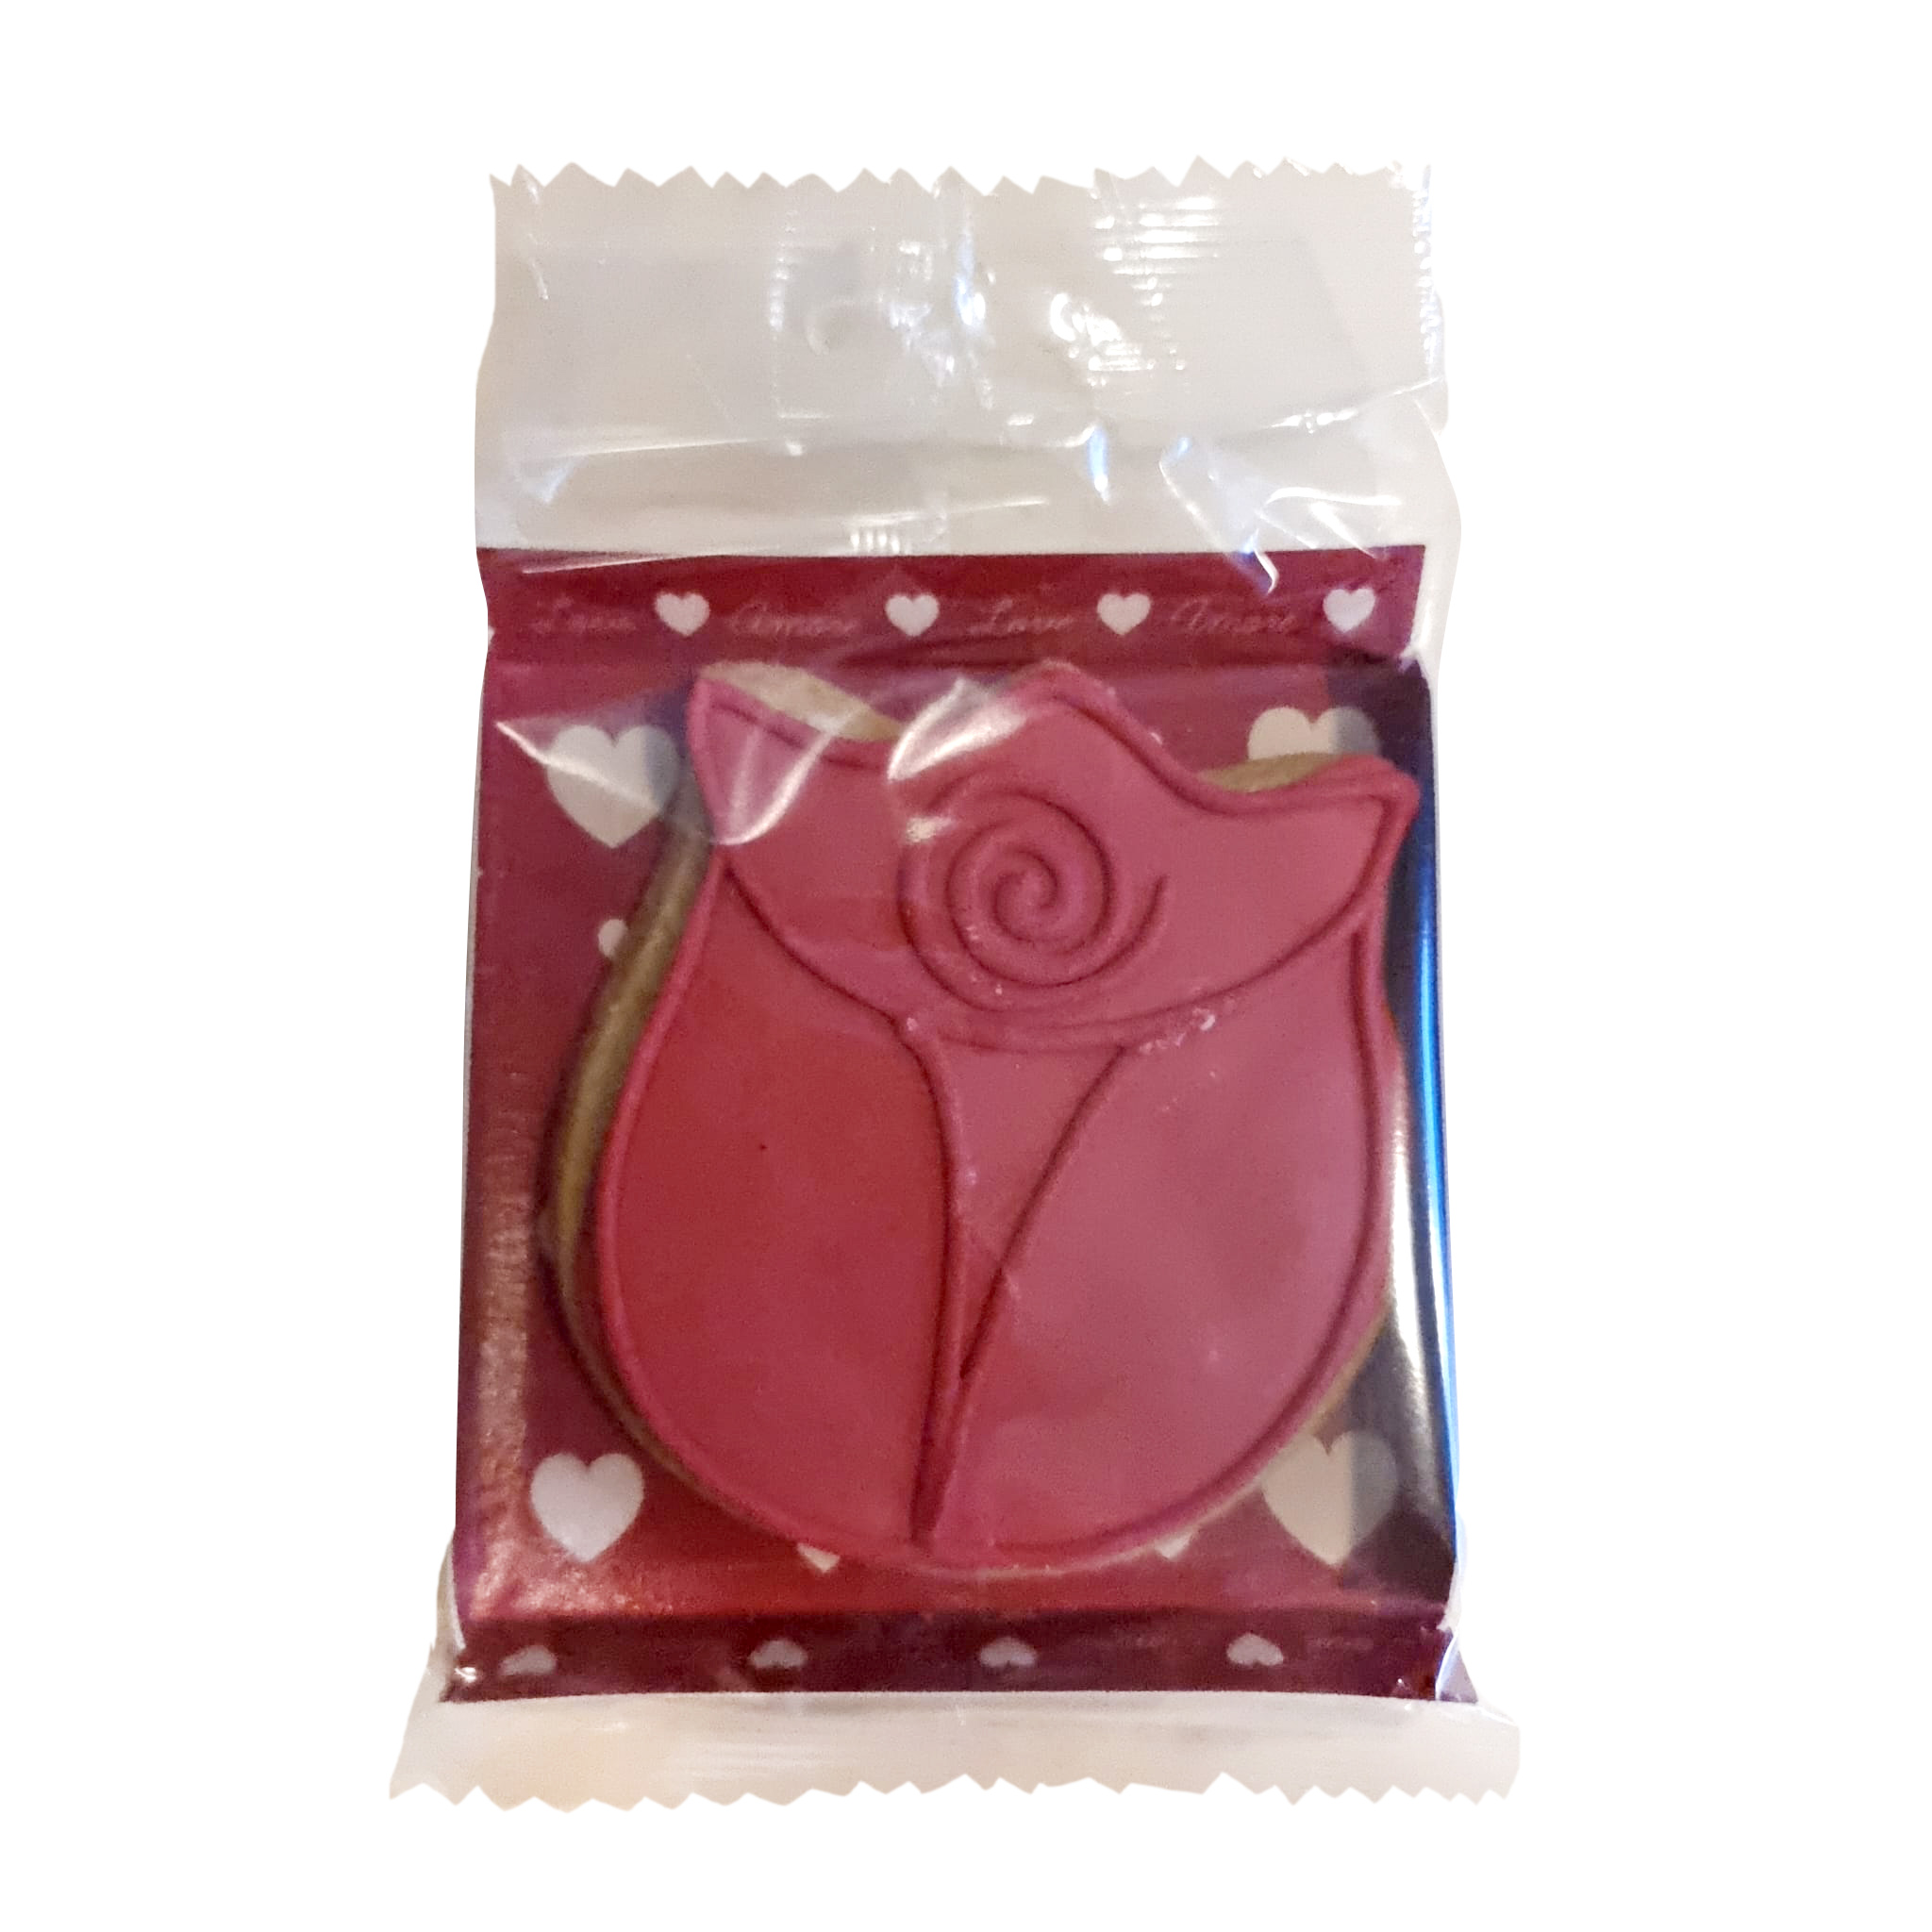 Biscuiti artizanali - Red Rose, 60g | Mondo di Laura